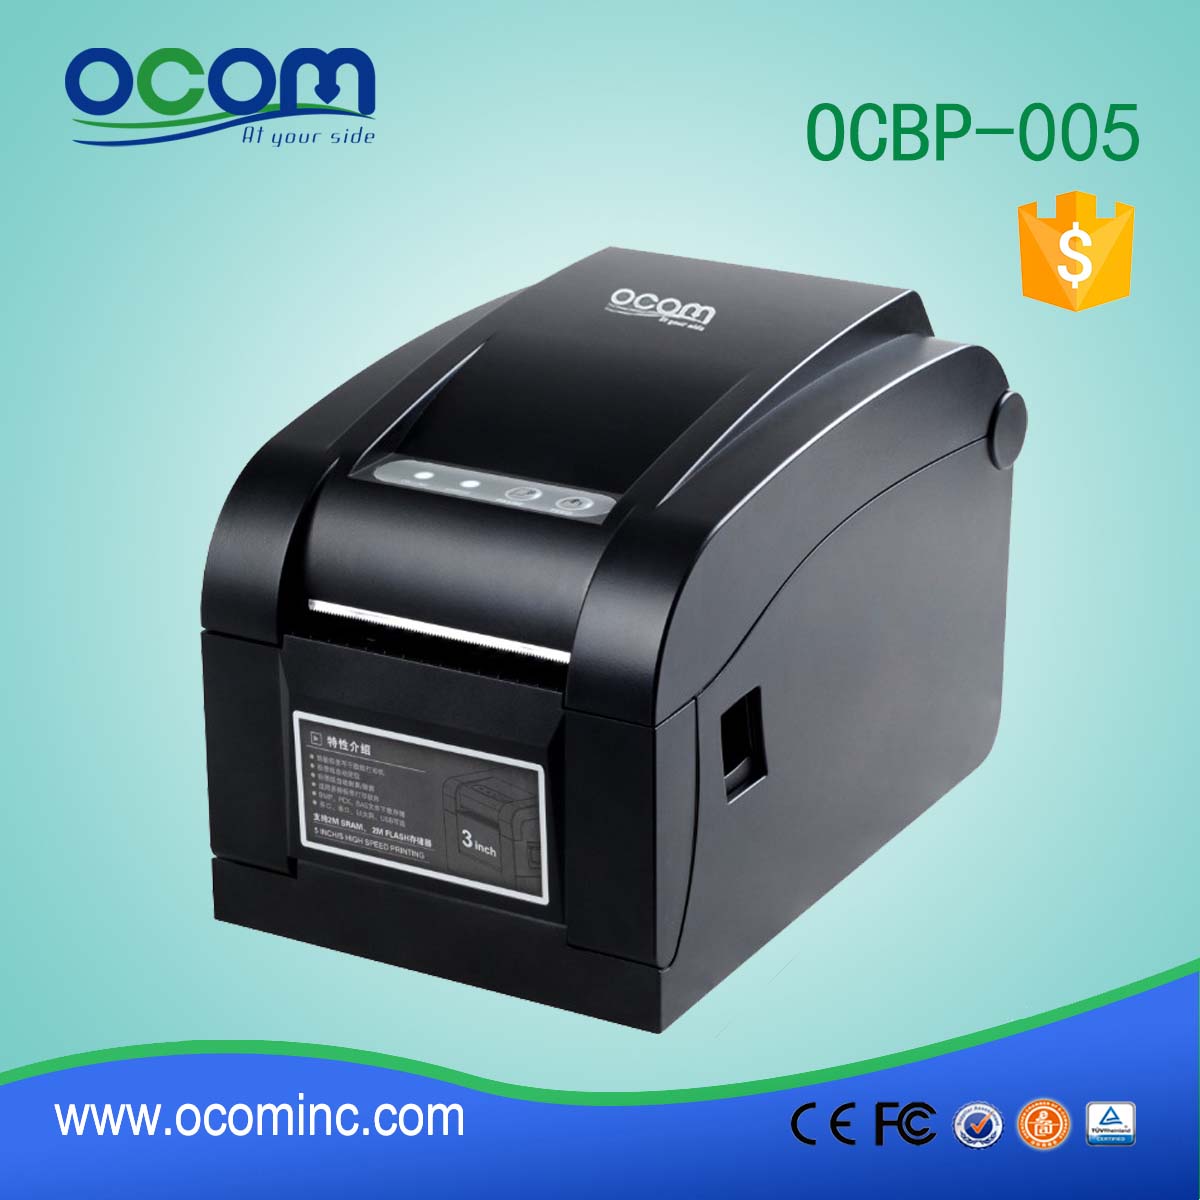 OCBP-005 Thermal Barcode Label Printer